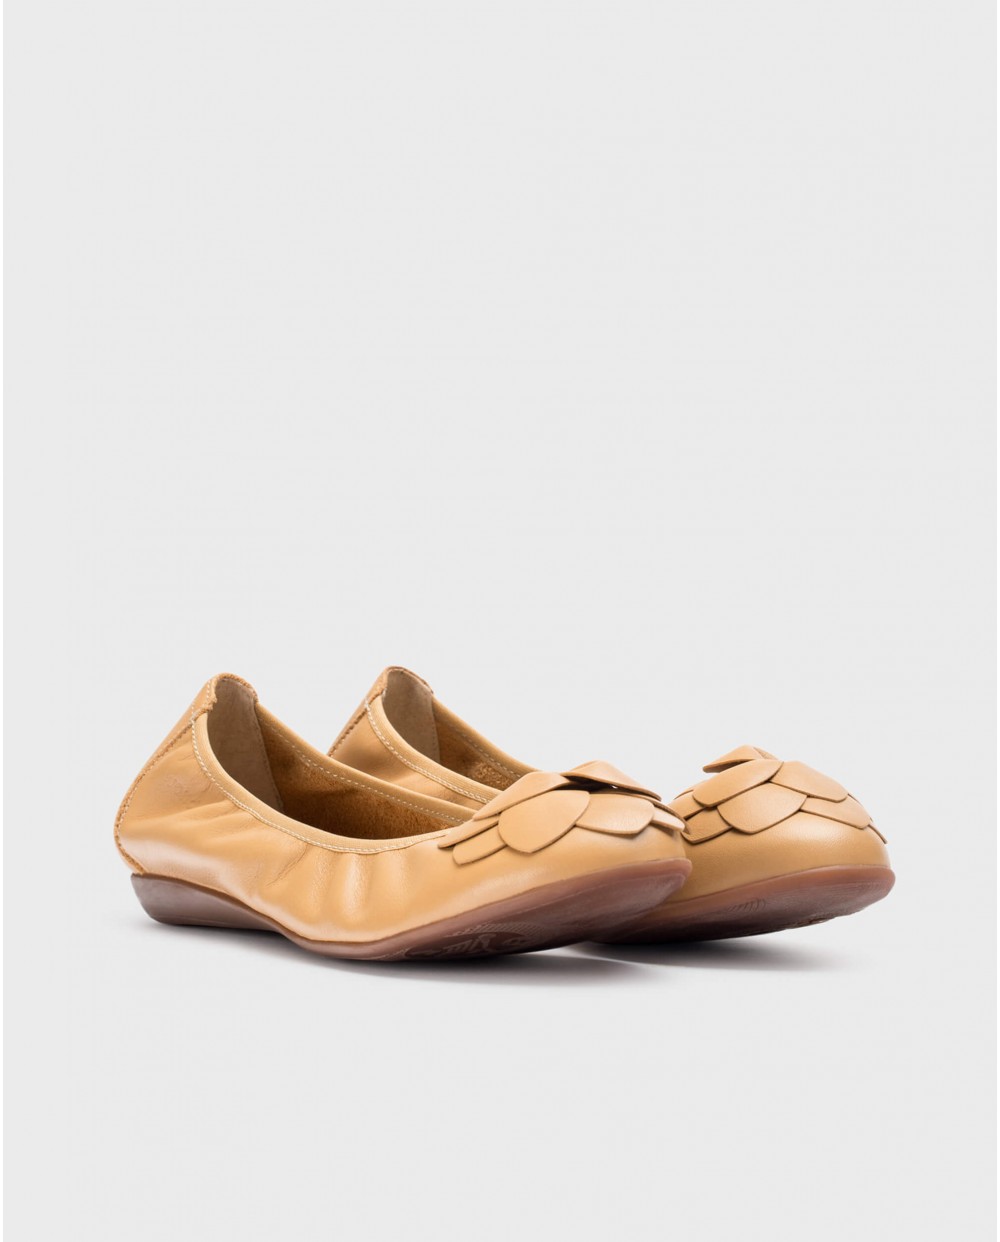 Wonders-Zapatos de mujer-Bailarina PRAGA Marrón